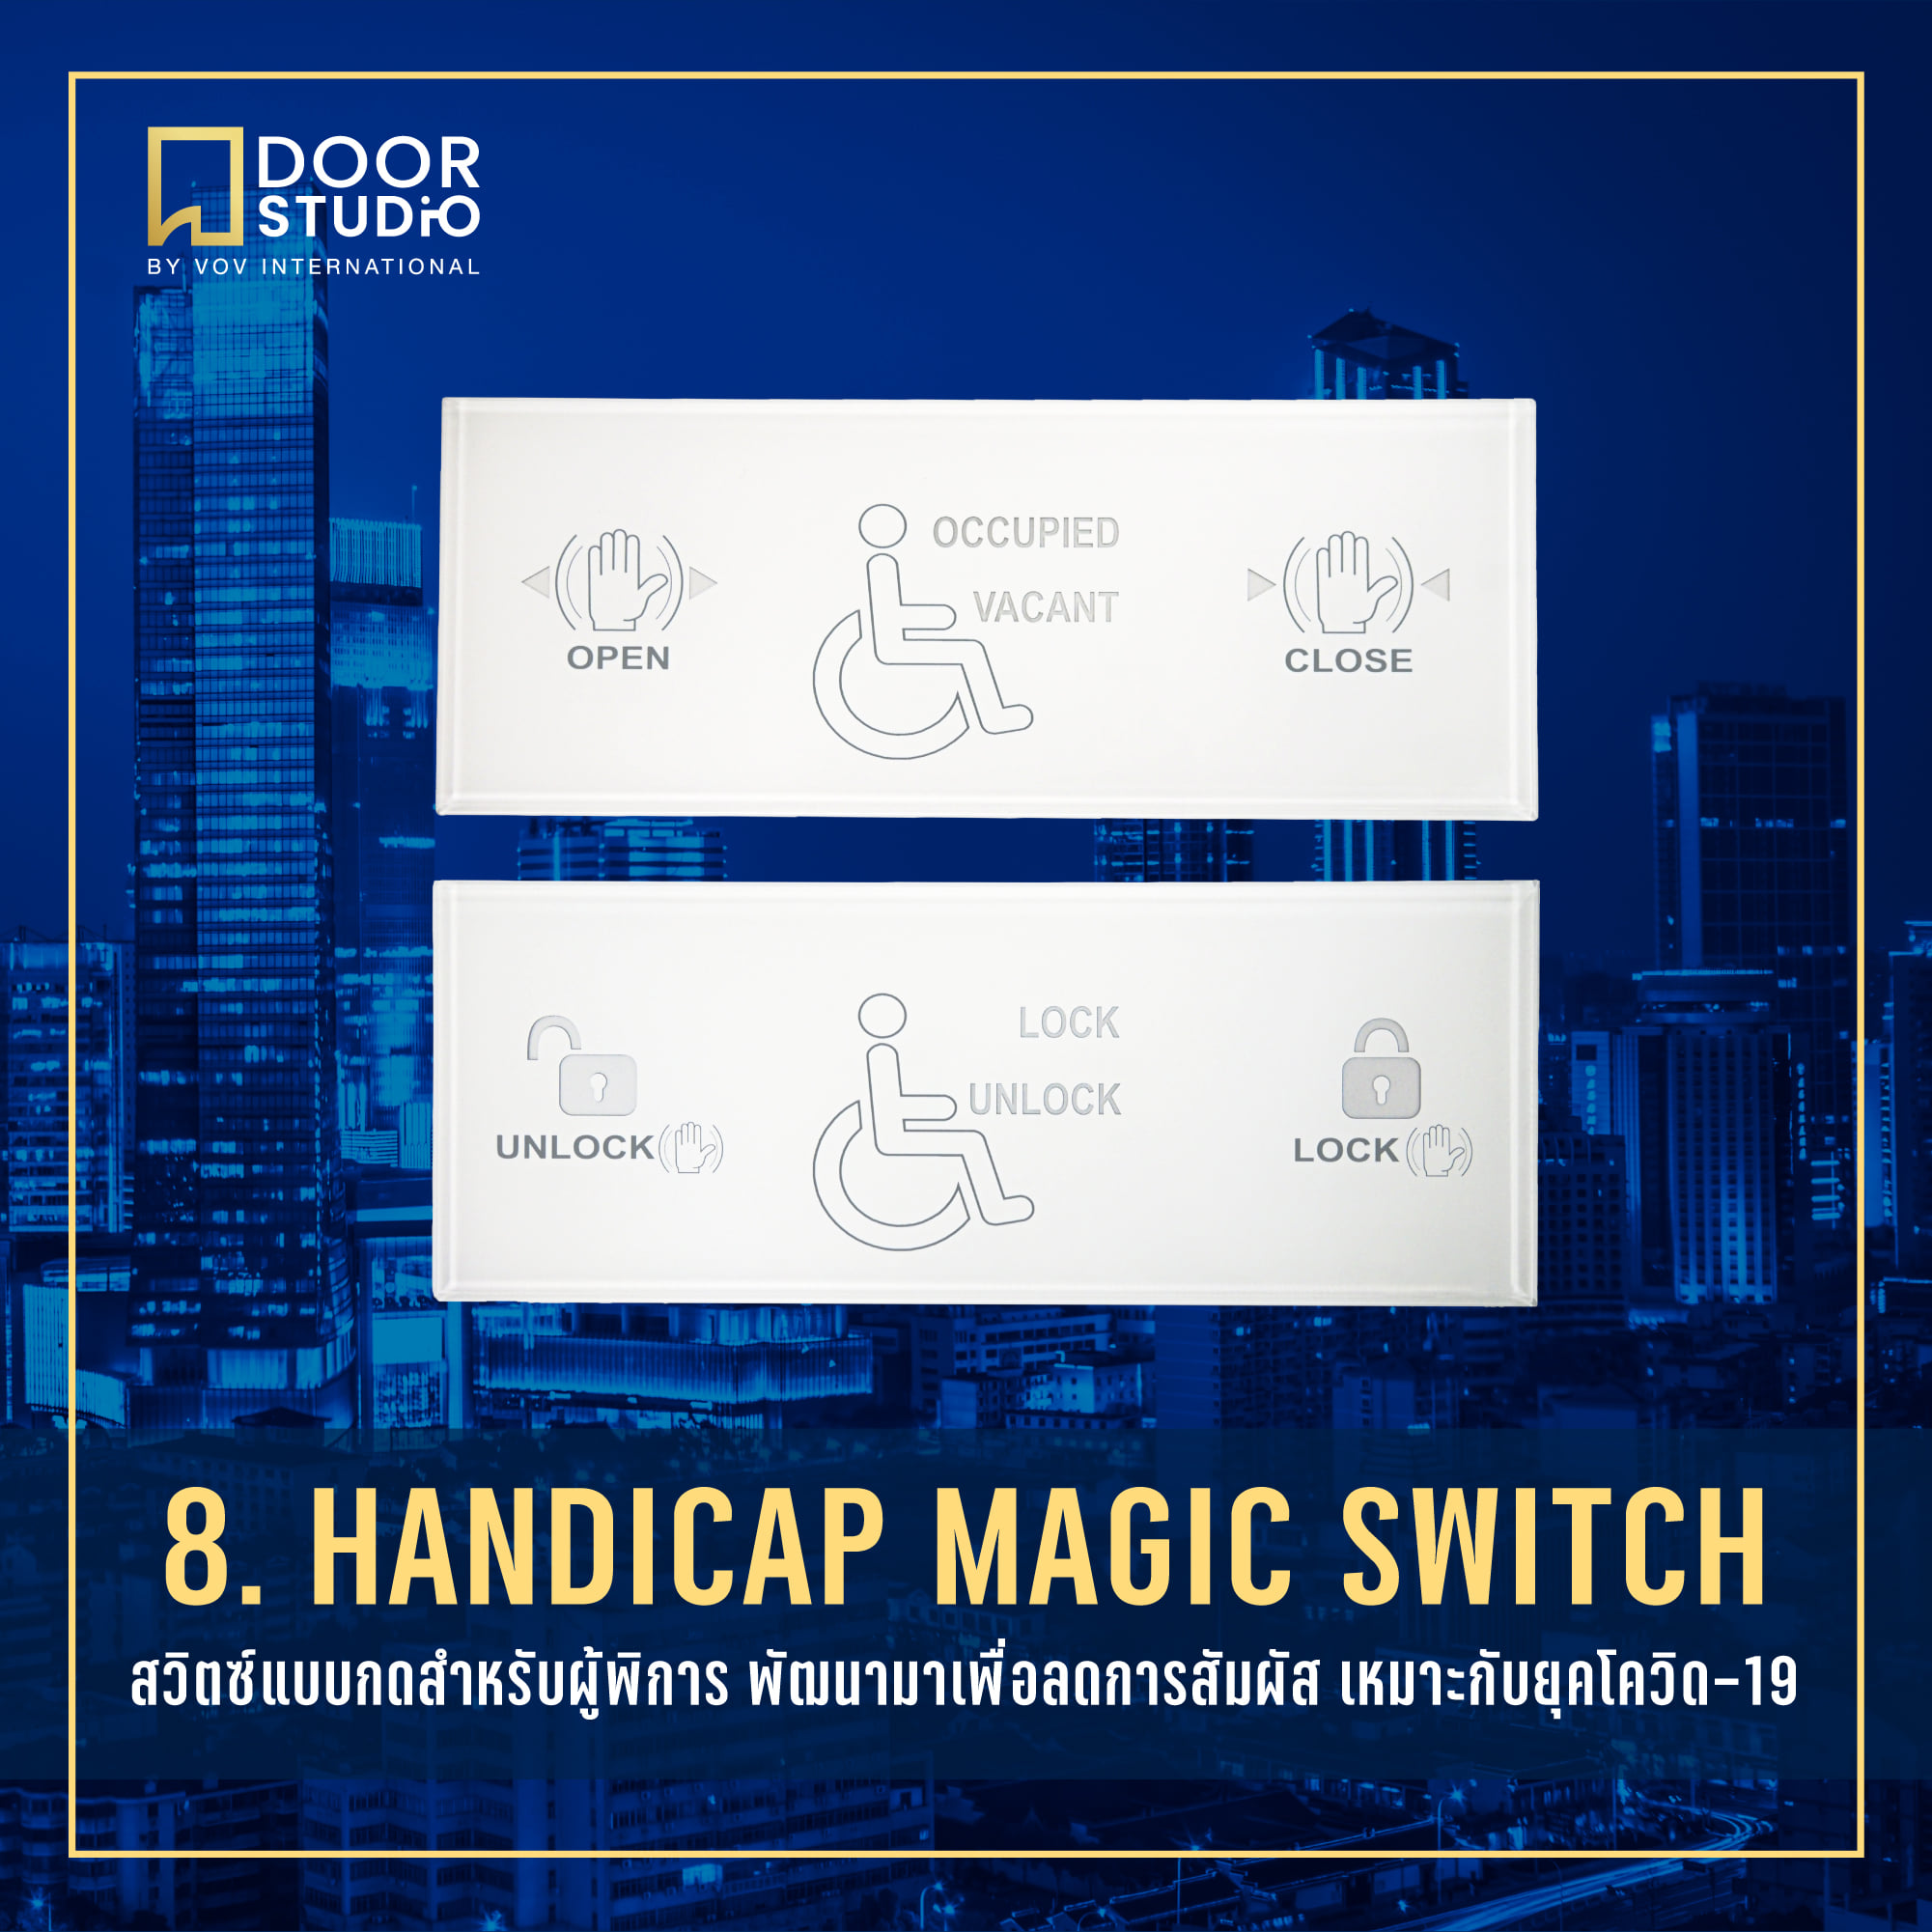 Handicap-Magic-Switch